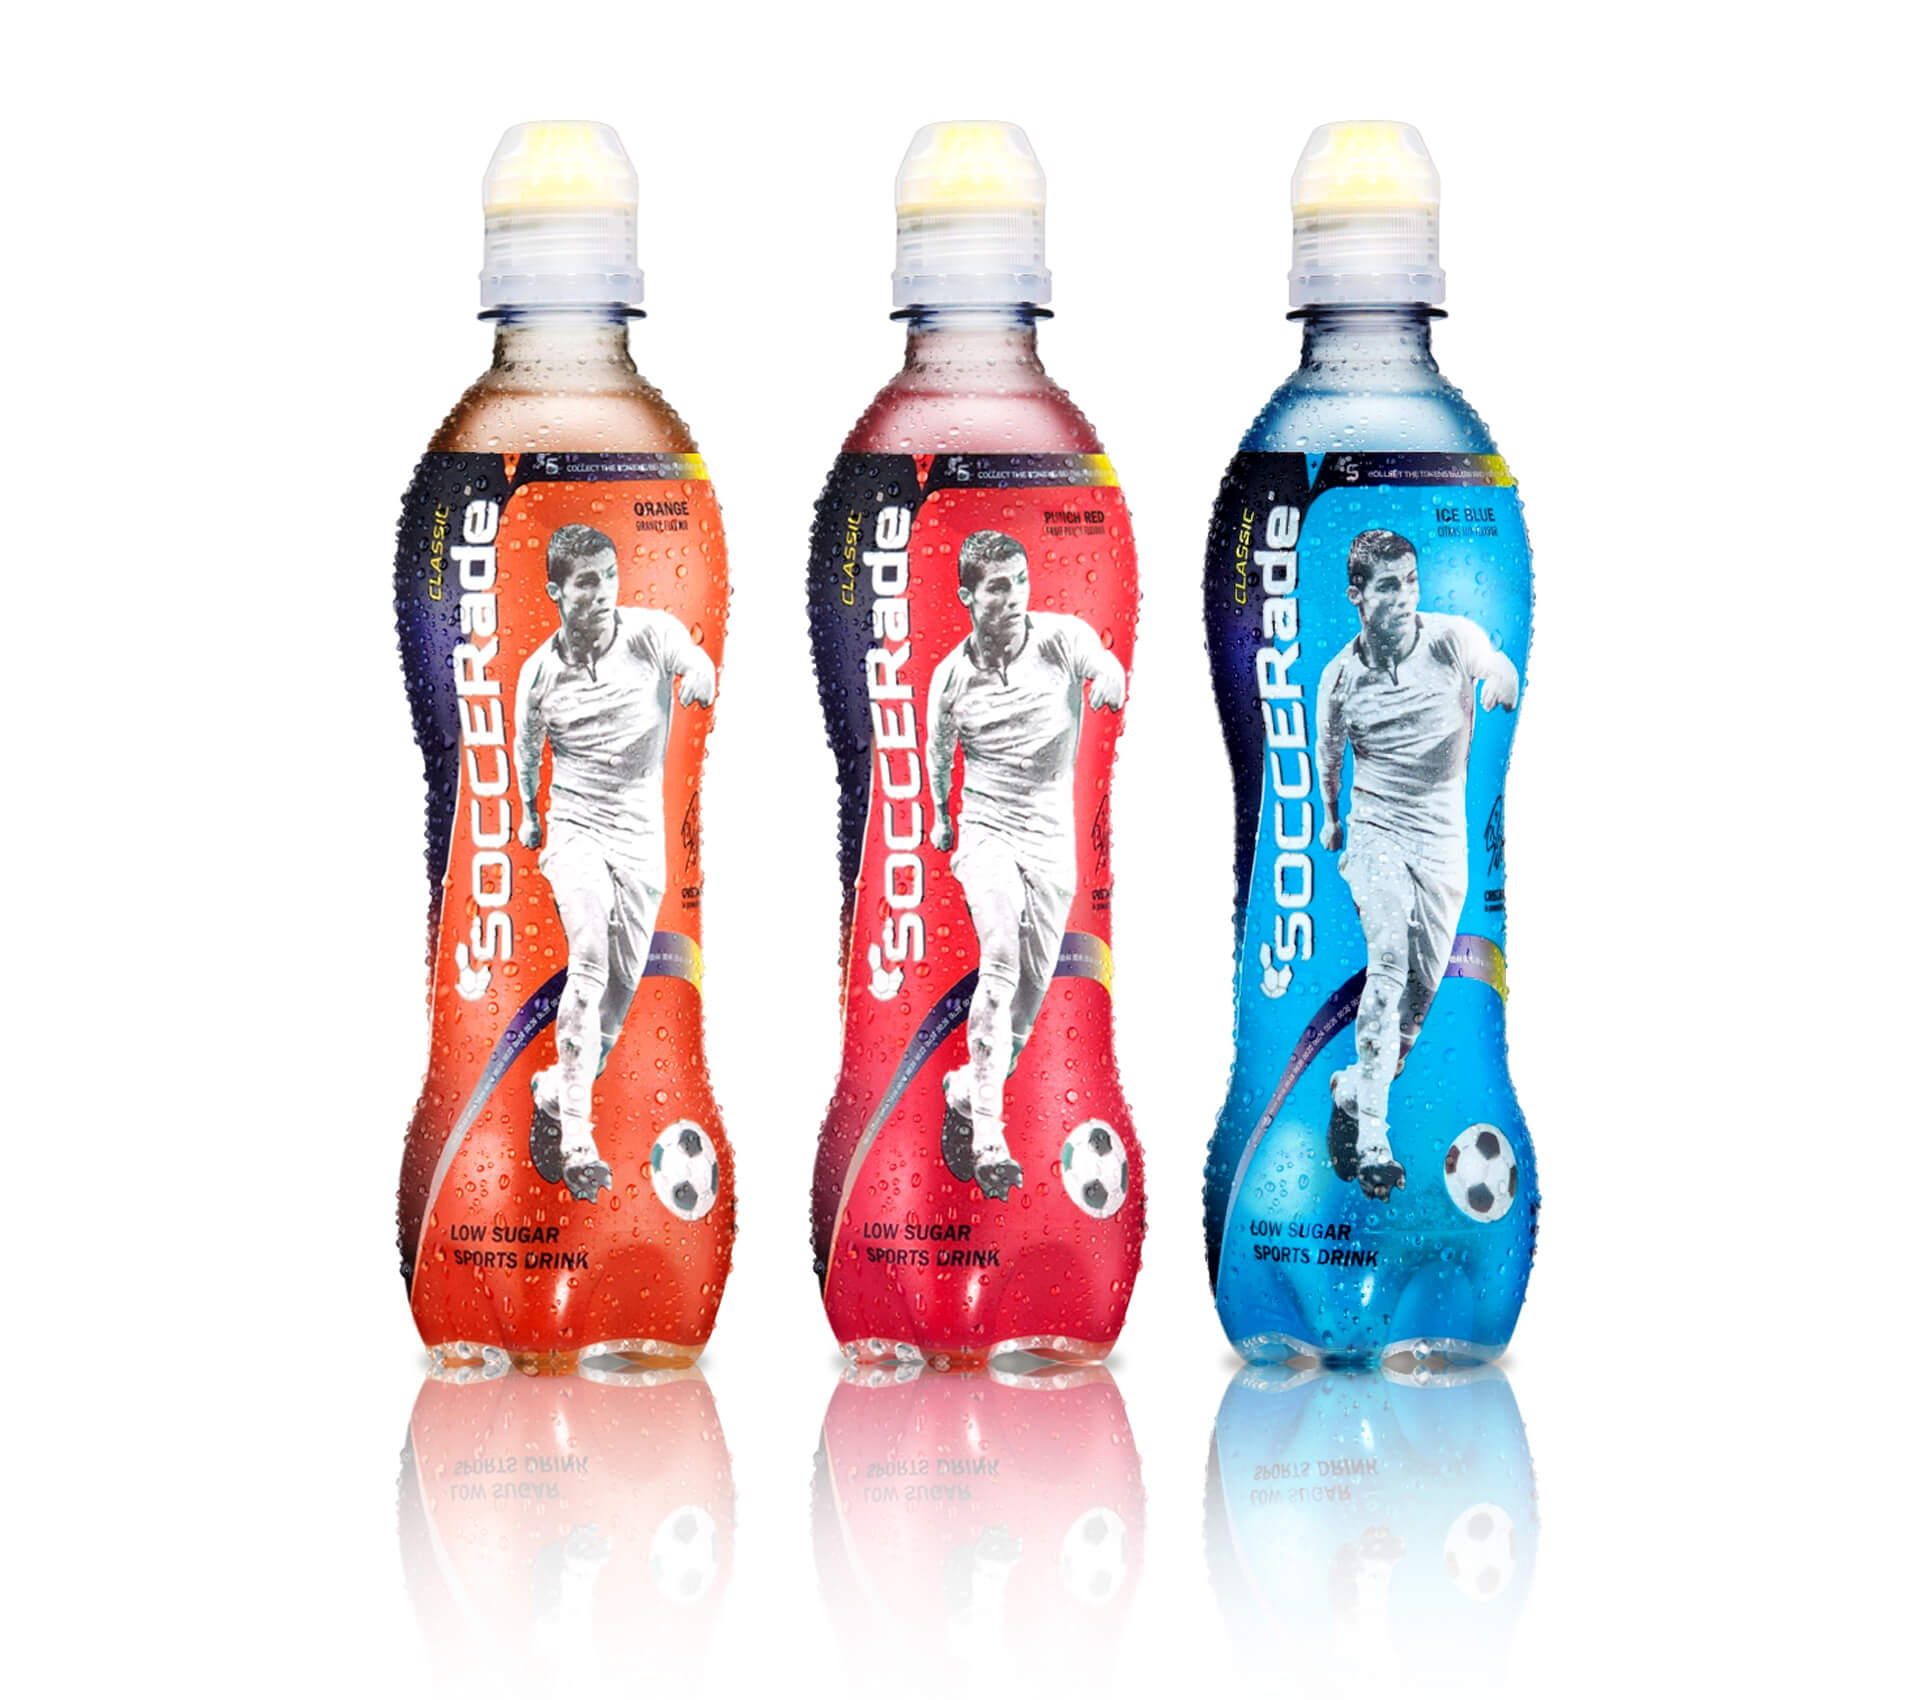 soccerade_bottles